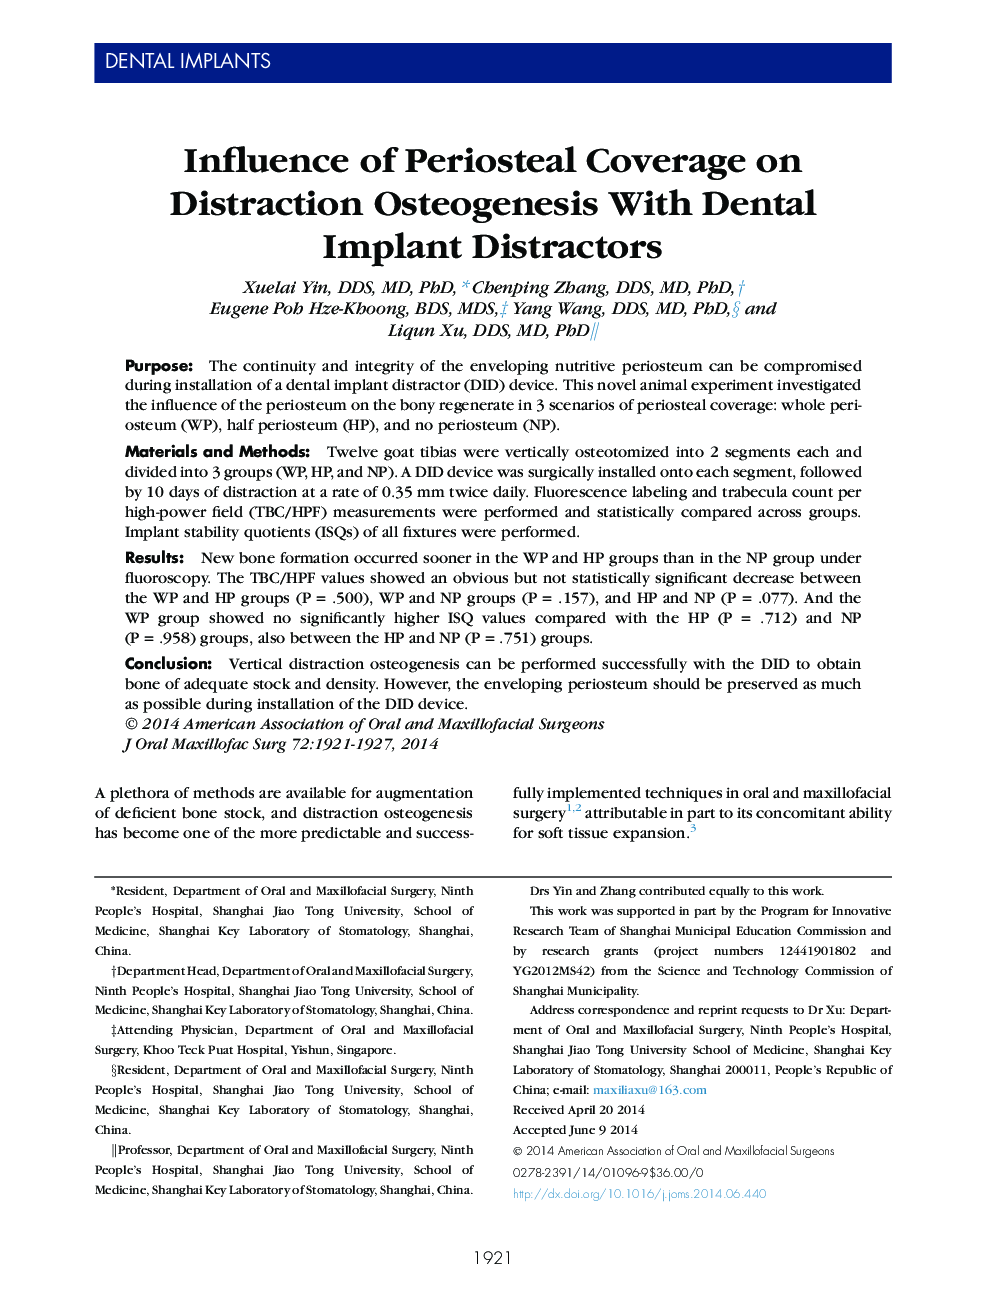 تأثیر پوشش پریستستال بر استئوژنز منحرف کردن با کشنده های ایمپلنت دندانی 